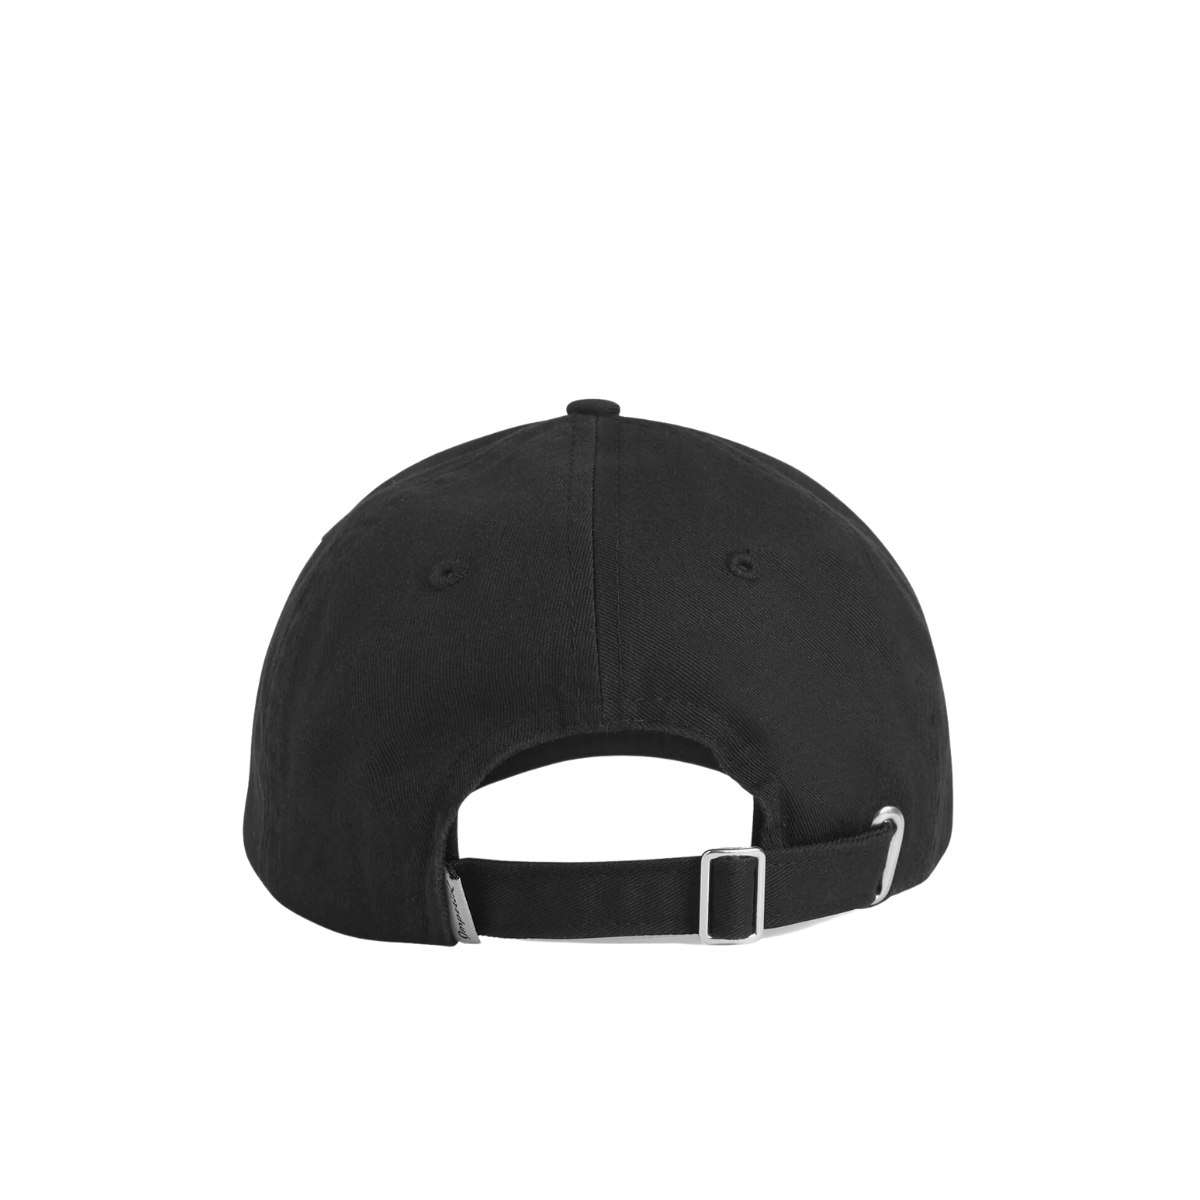 Favorite Daughter Classic Logo Baseball Hat in Black